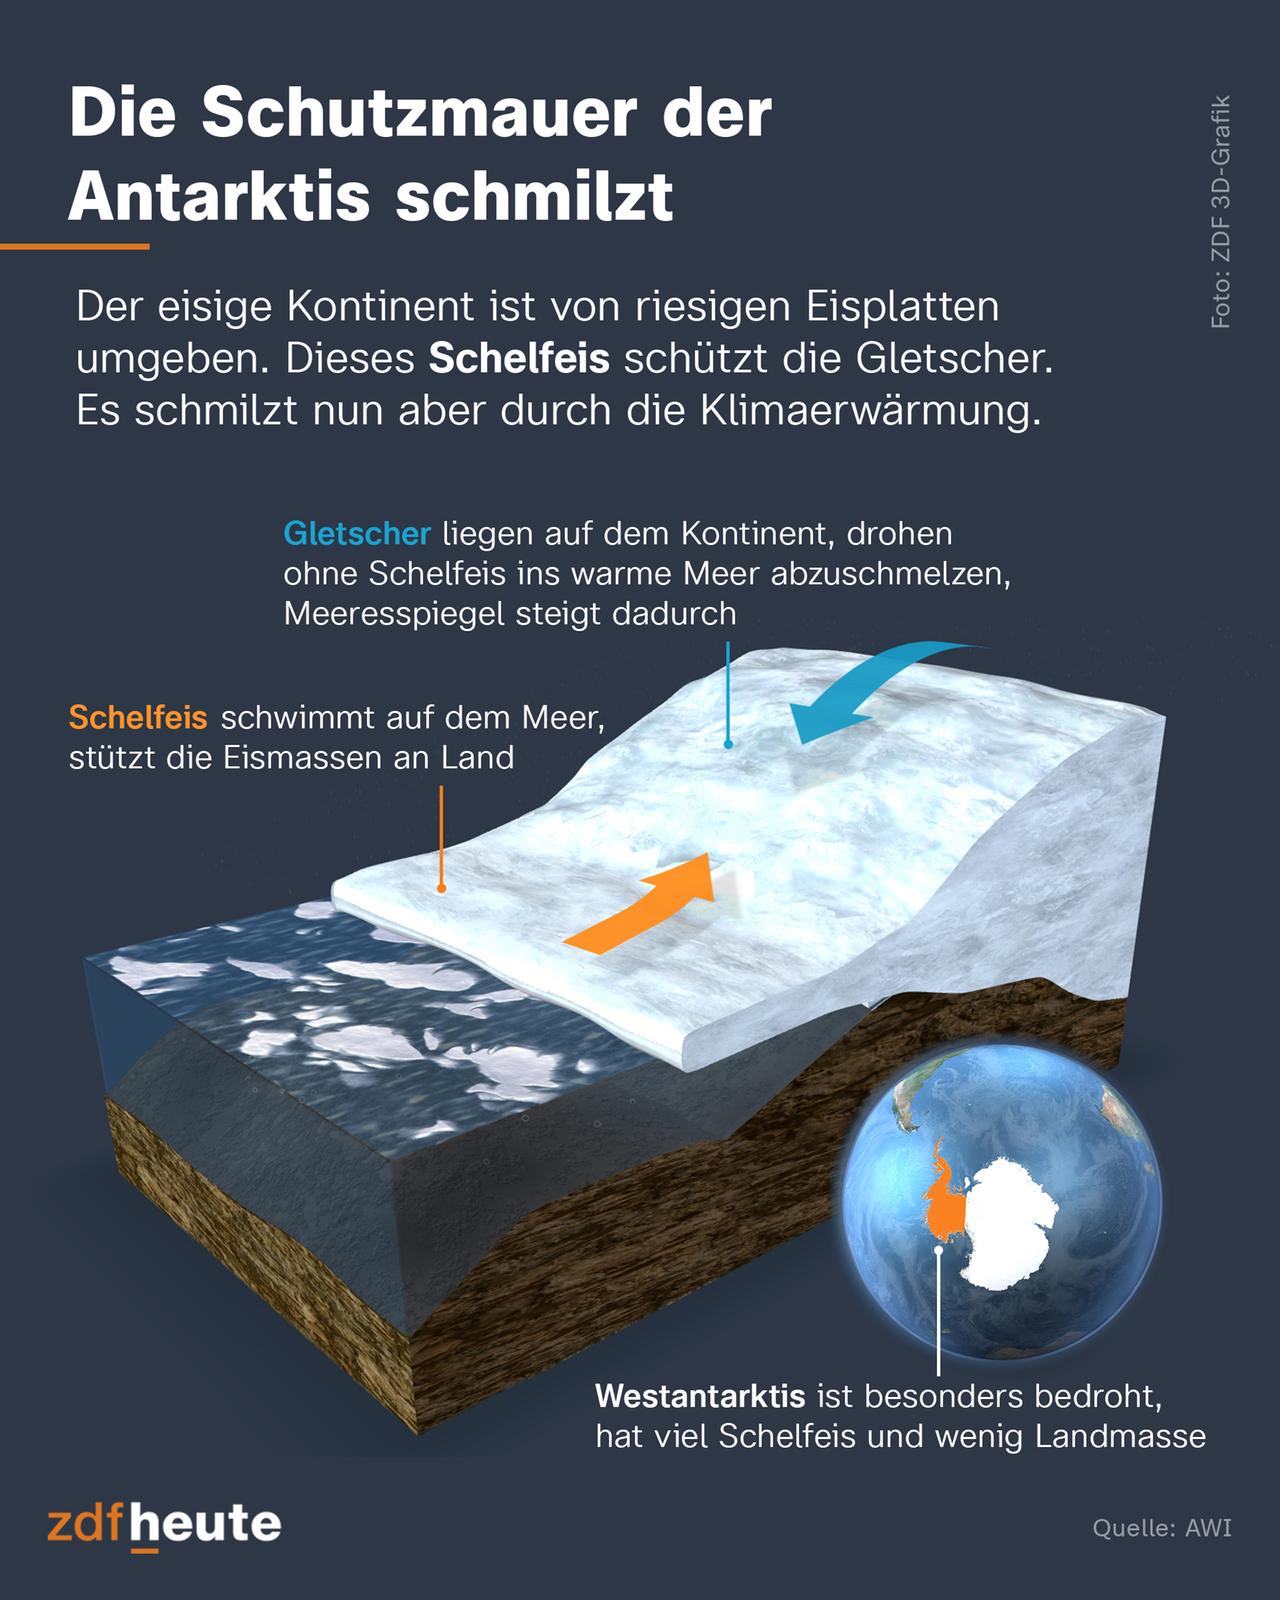 Die Antarktis ist von riesigen Eisplatten umgeben. Dieses Schelfeis schützt die Gletscher des Kontinents. Doch es schmilzt durch die Klimaerwärmung. Die Gletscher auf dem Kontinent drohen ohne Schelfeis ins warme Meer abzuschmelzen, wodurch der Meeresspiegel noch schneller steigt. 